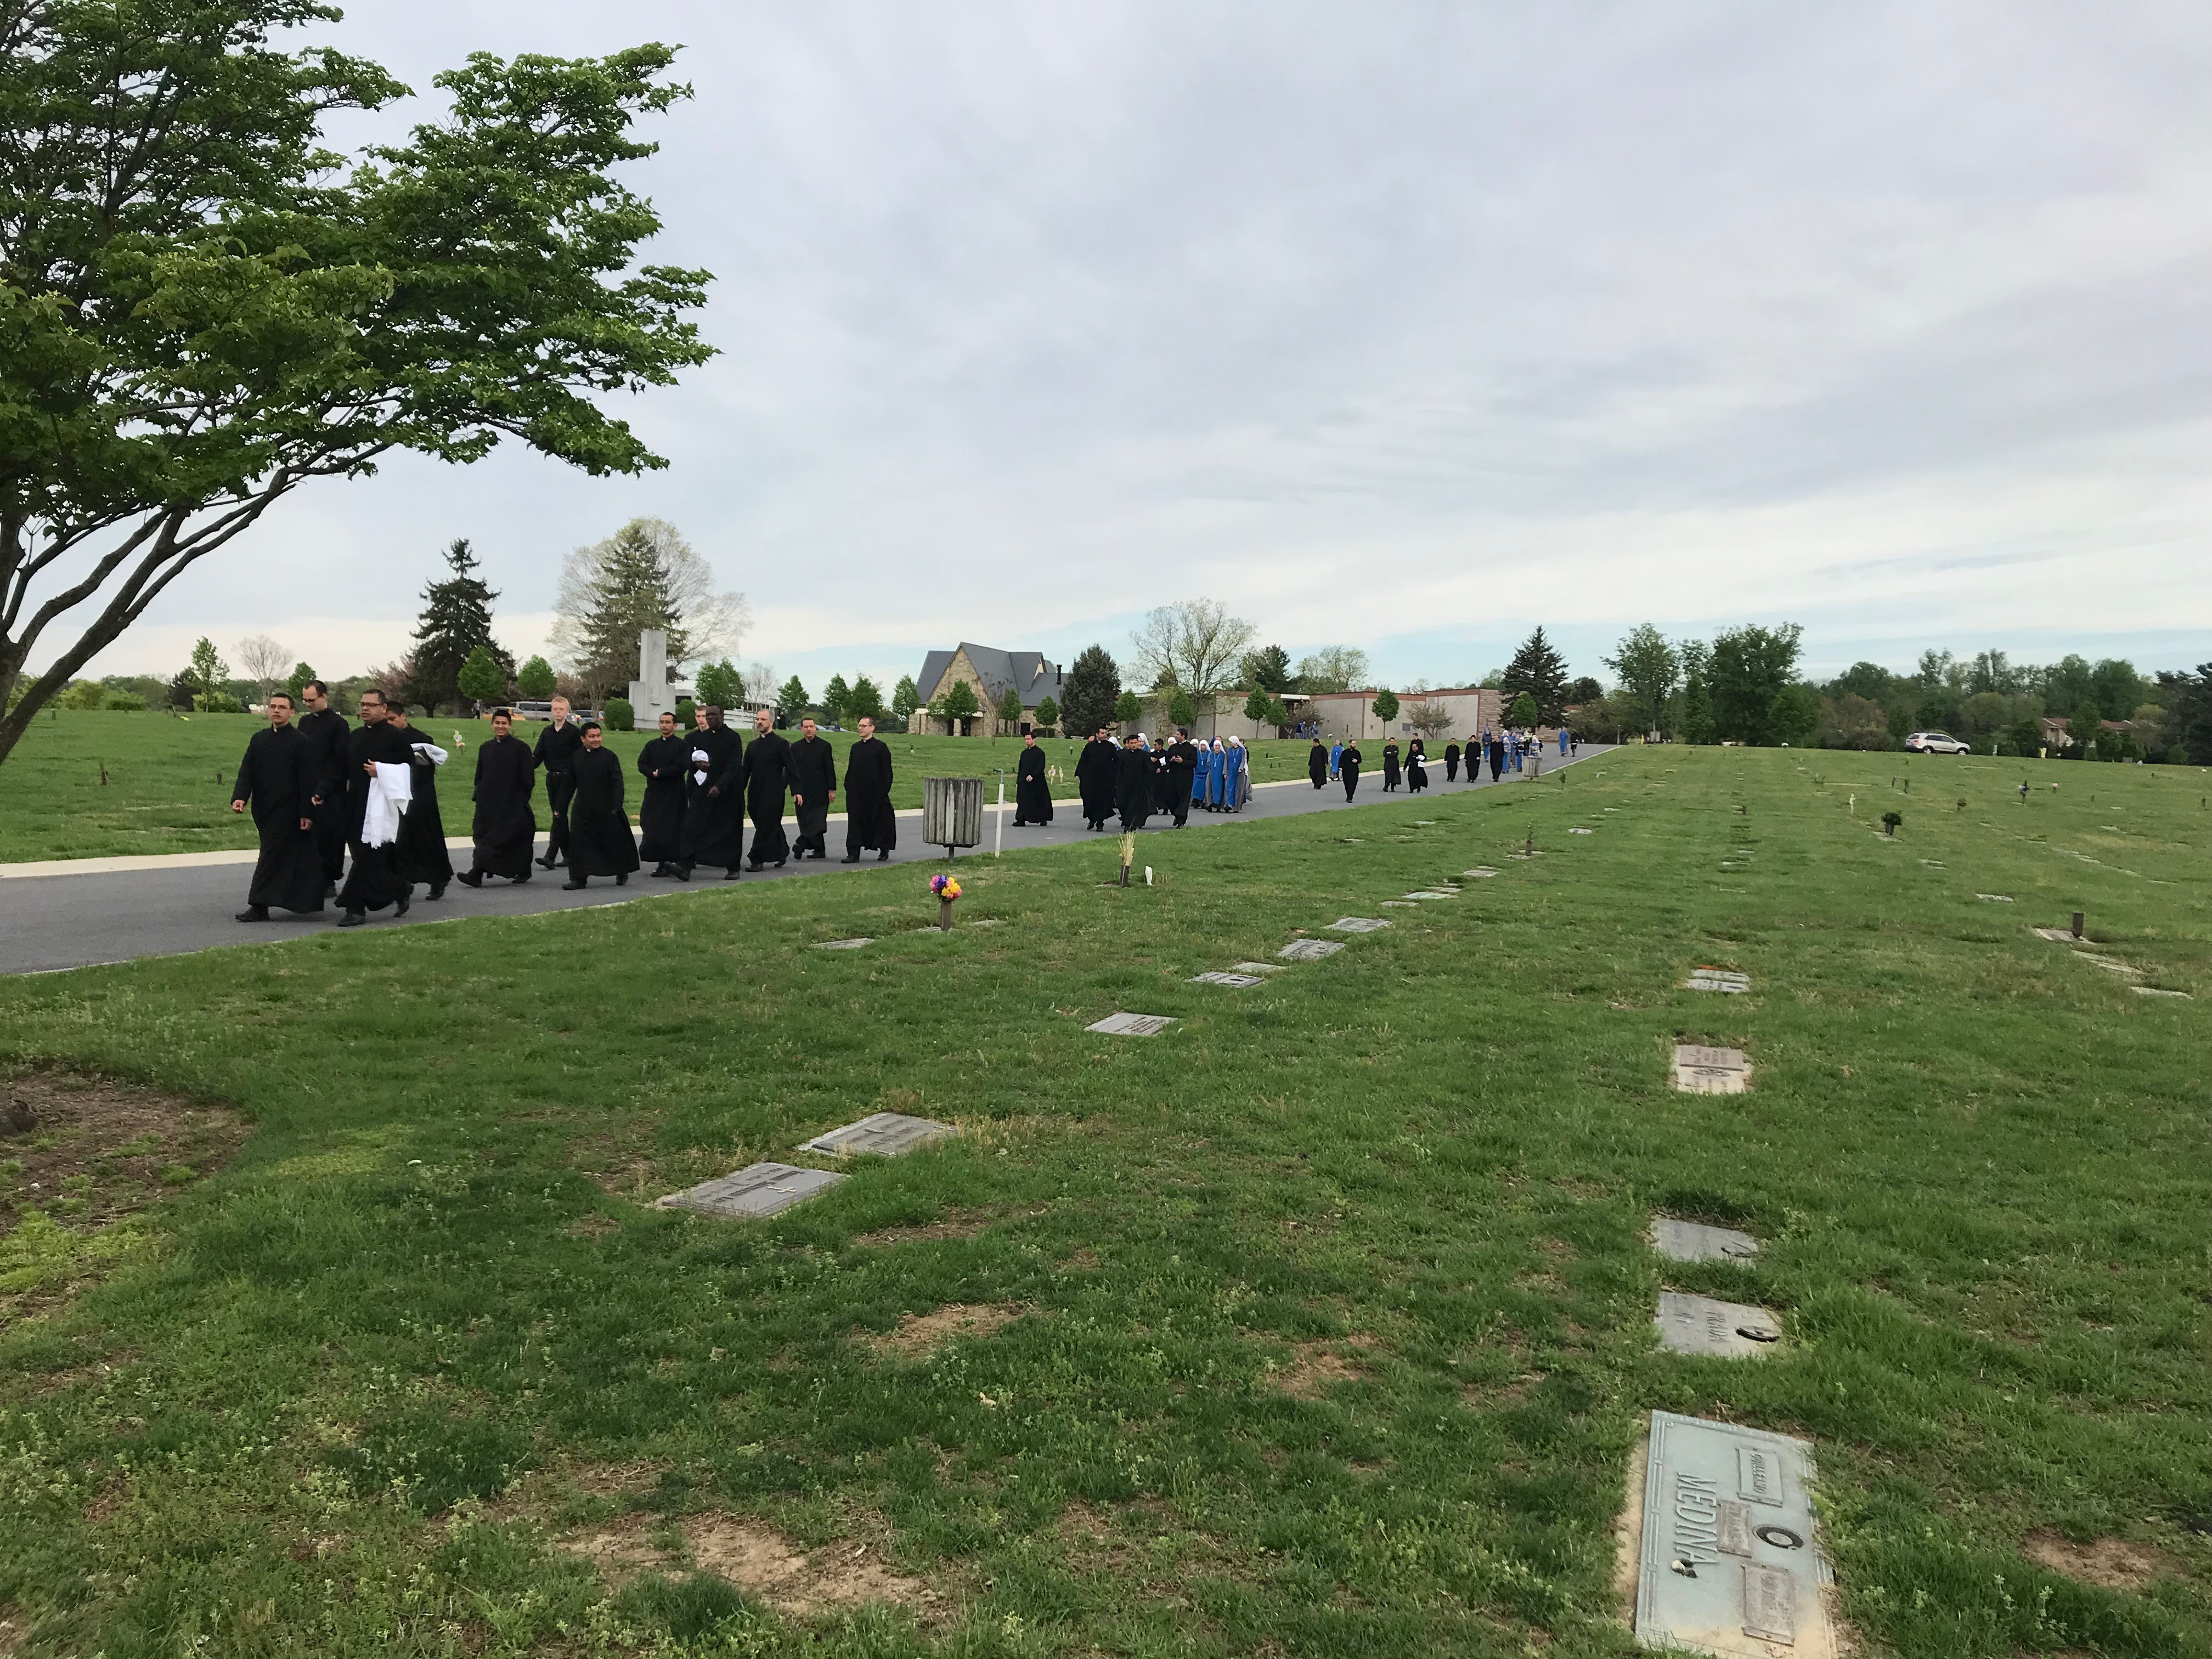 Fr Daniel Burial 10 - IVE America